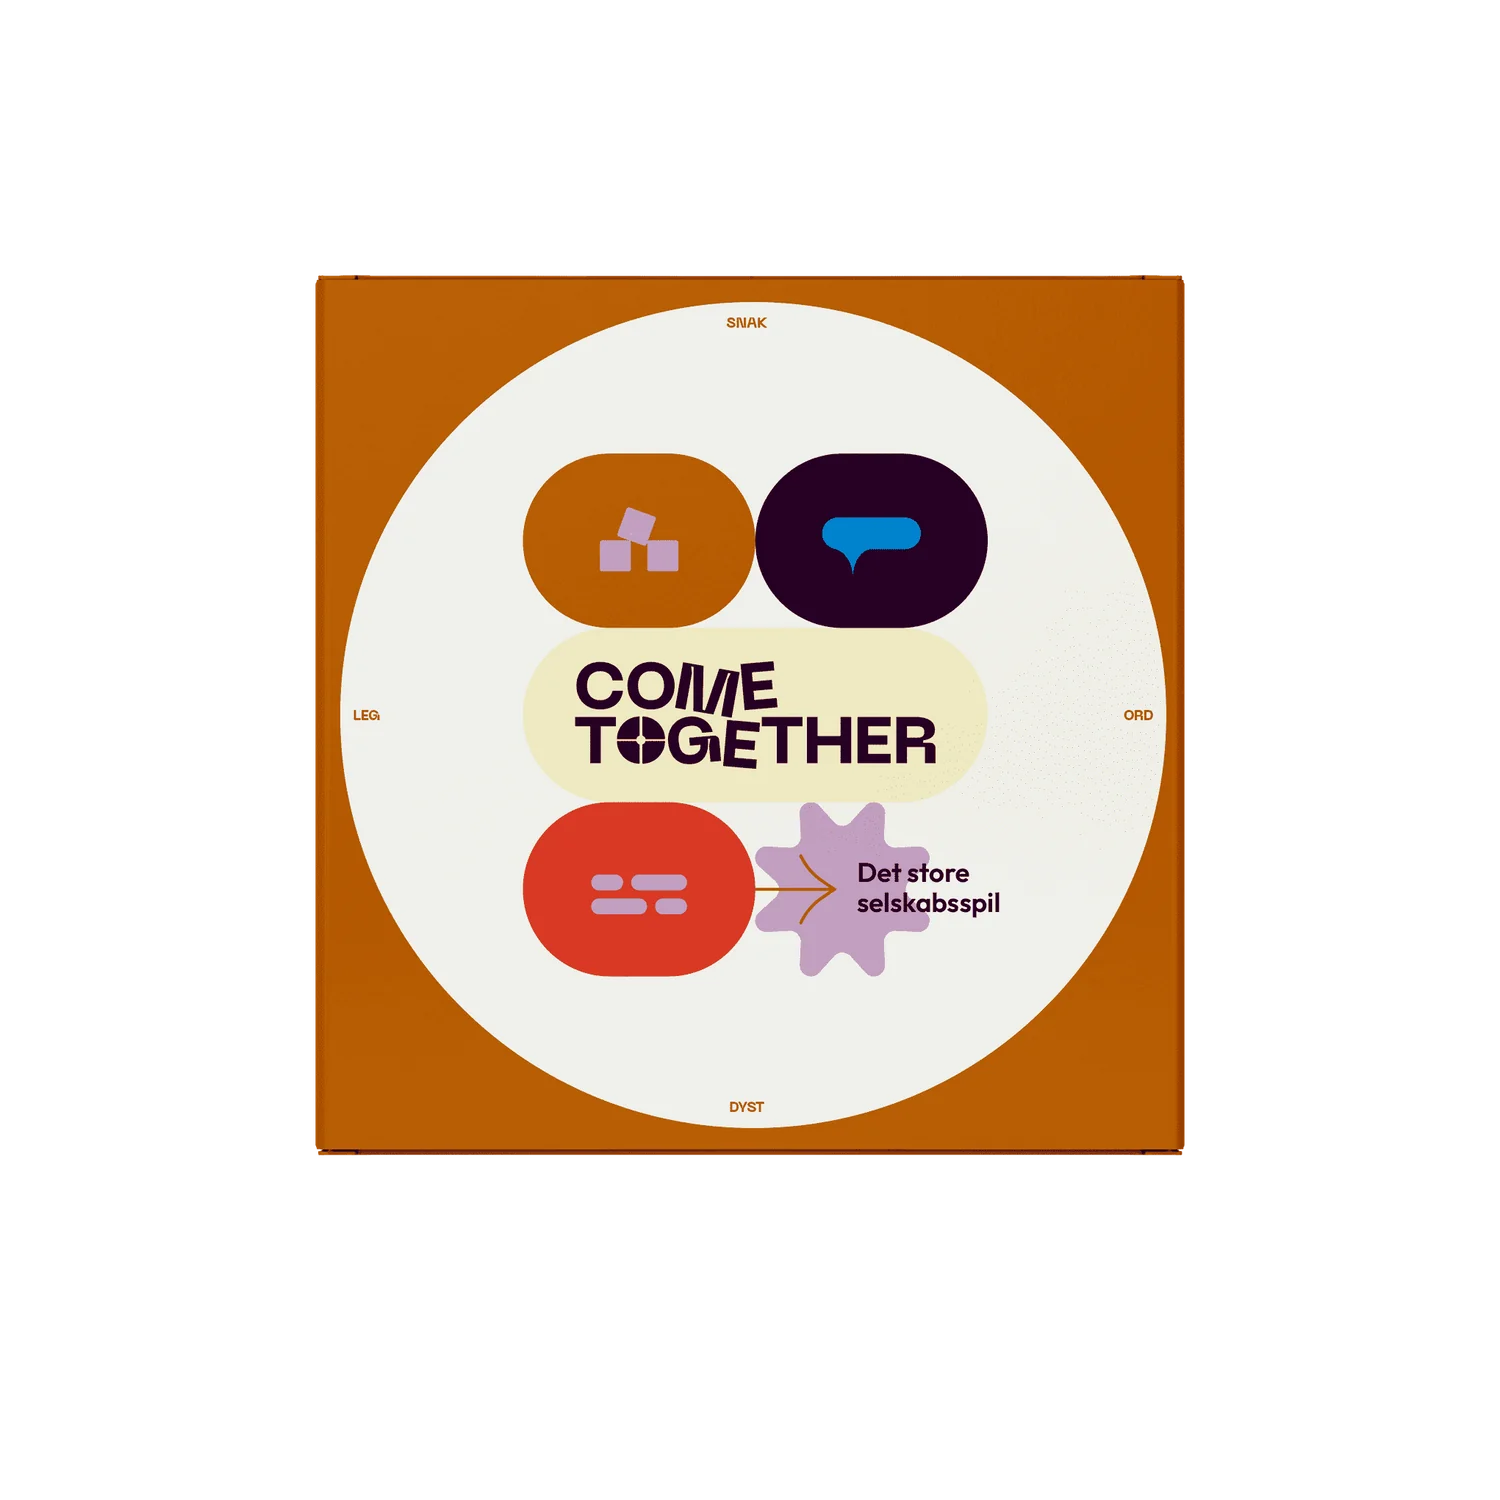 Come Together - det store selskabsspil